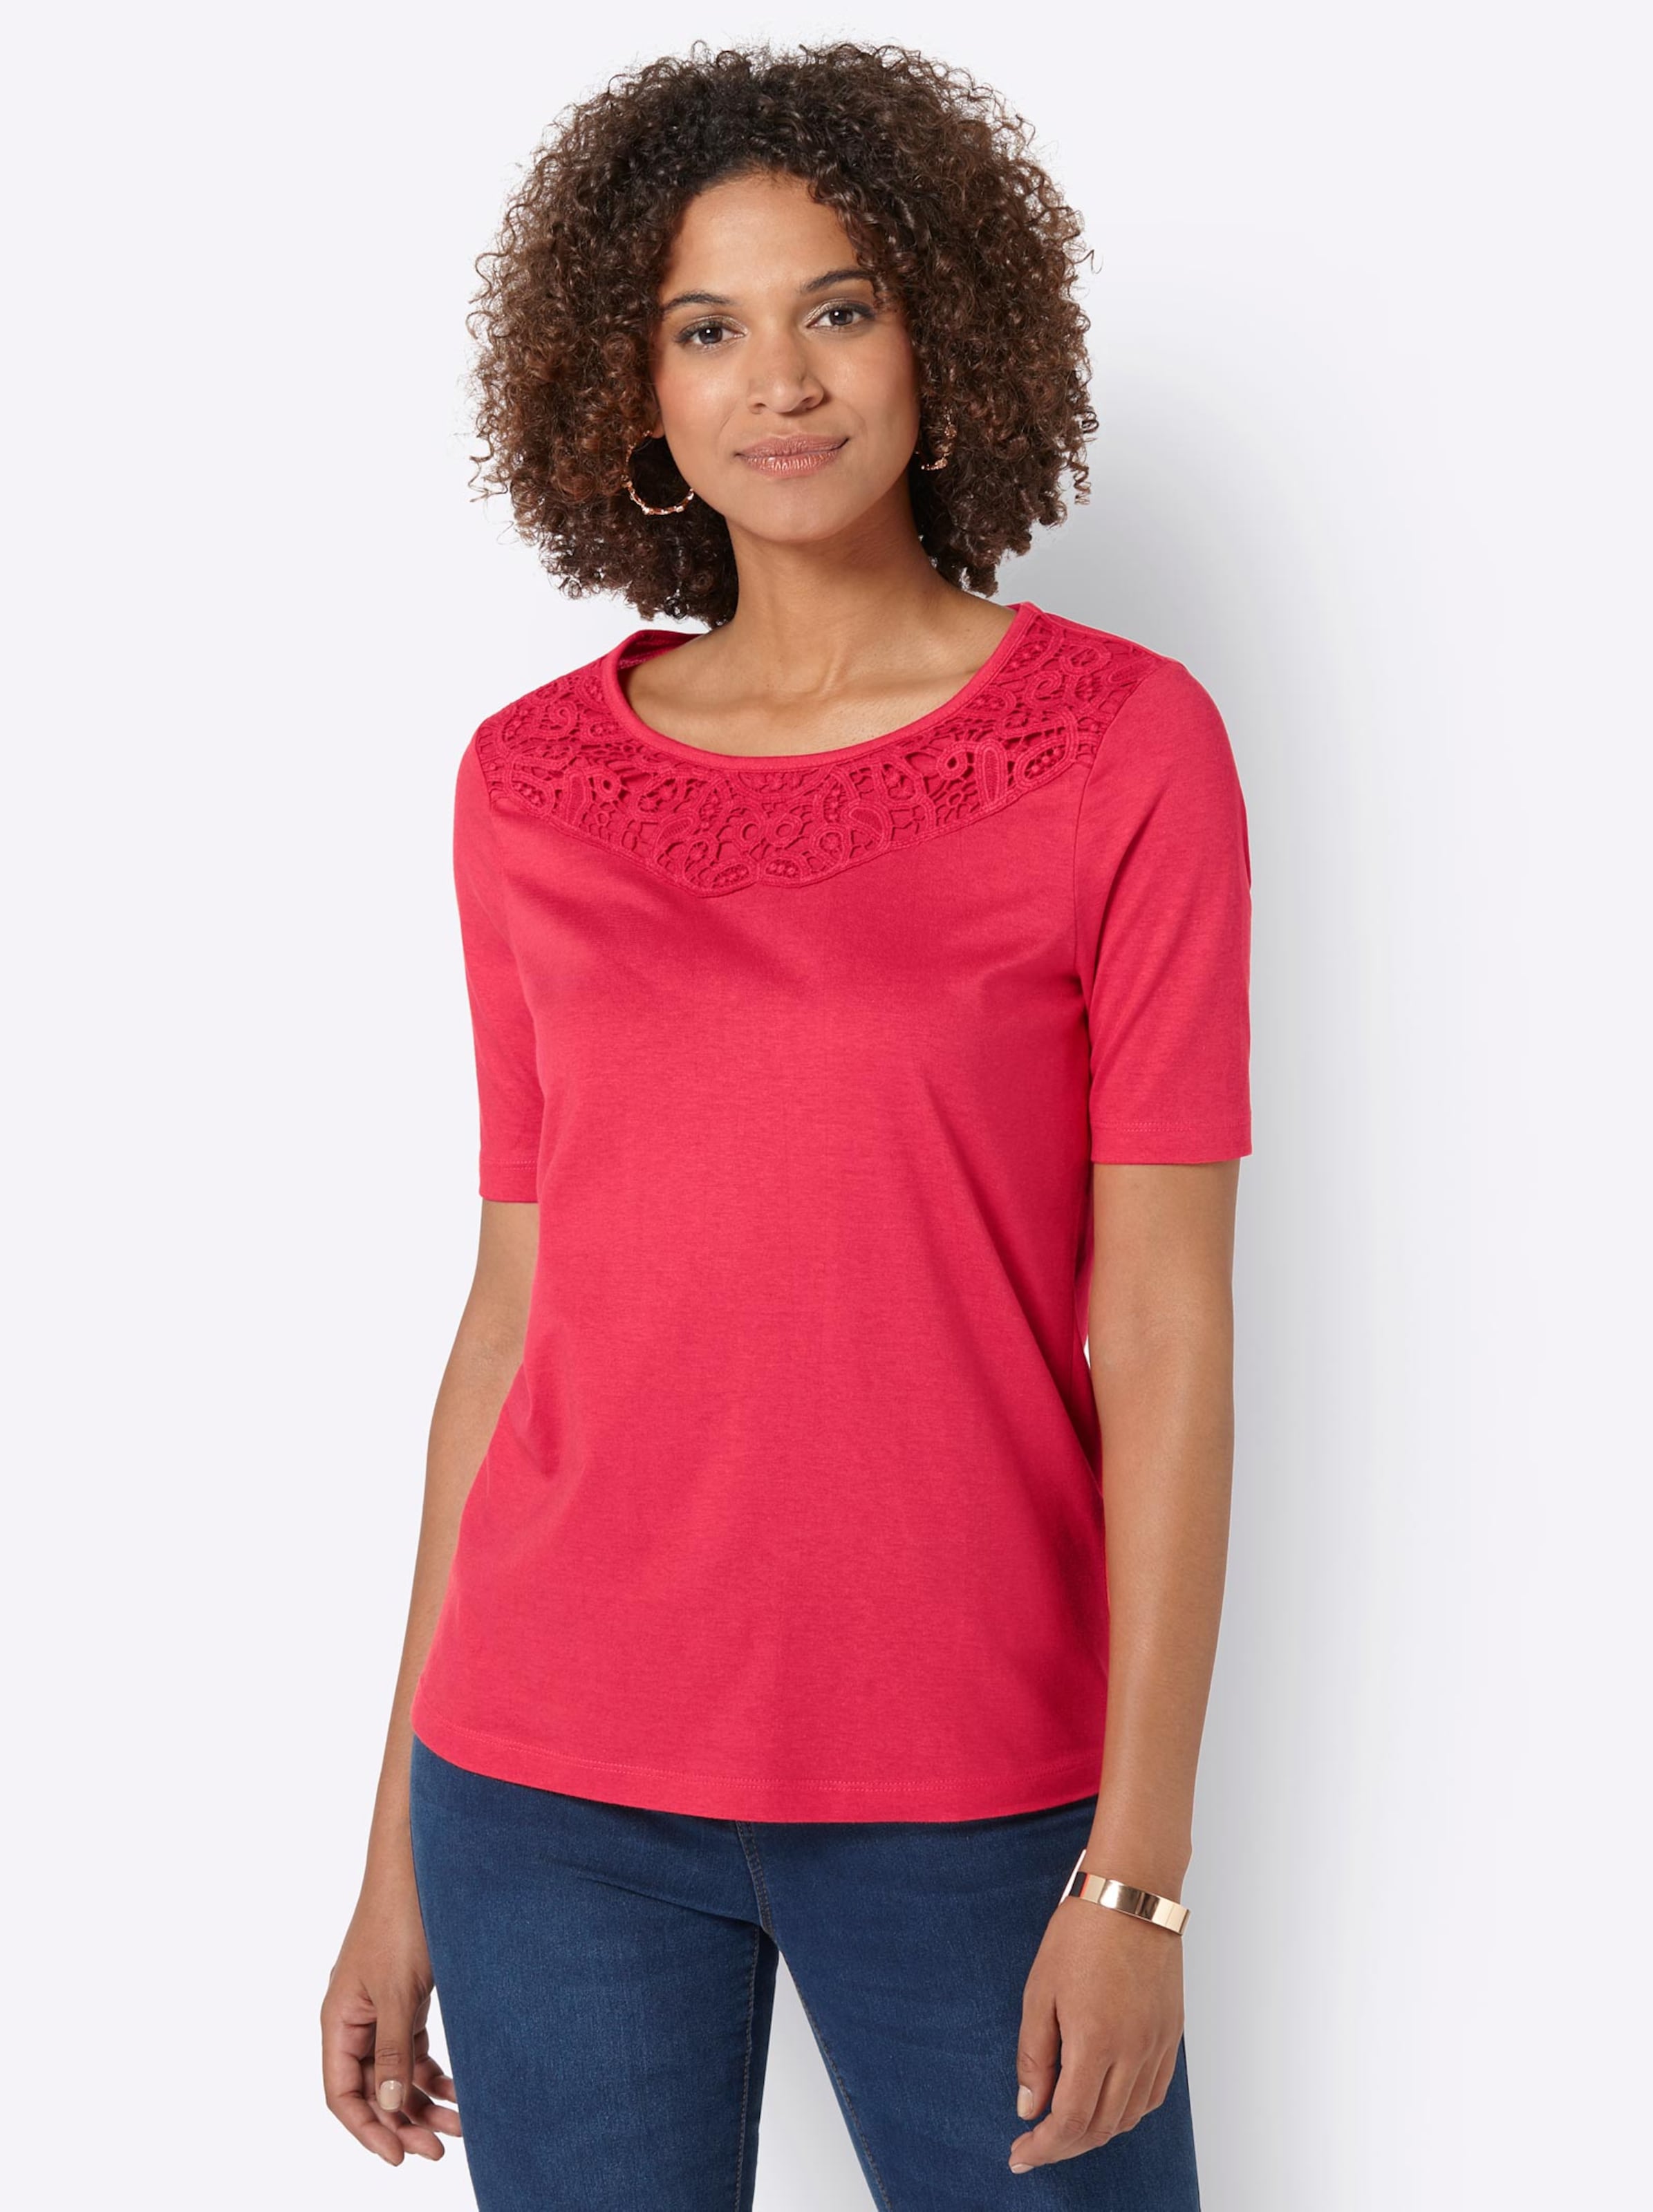 Damenmode Shirts Kurzarmshirt in rot 